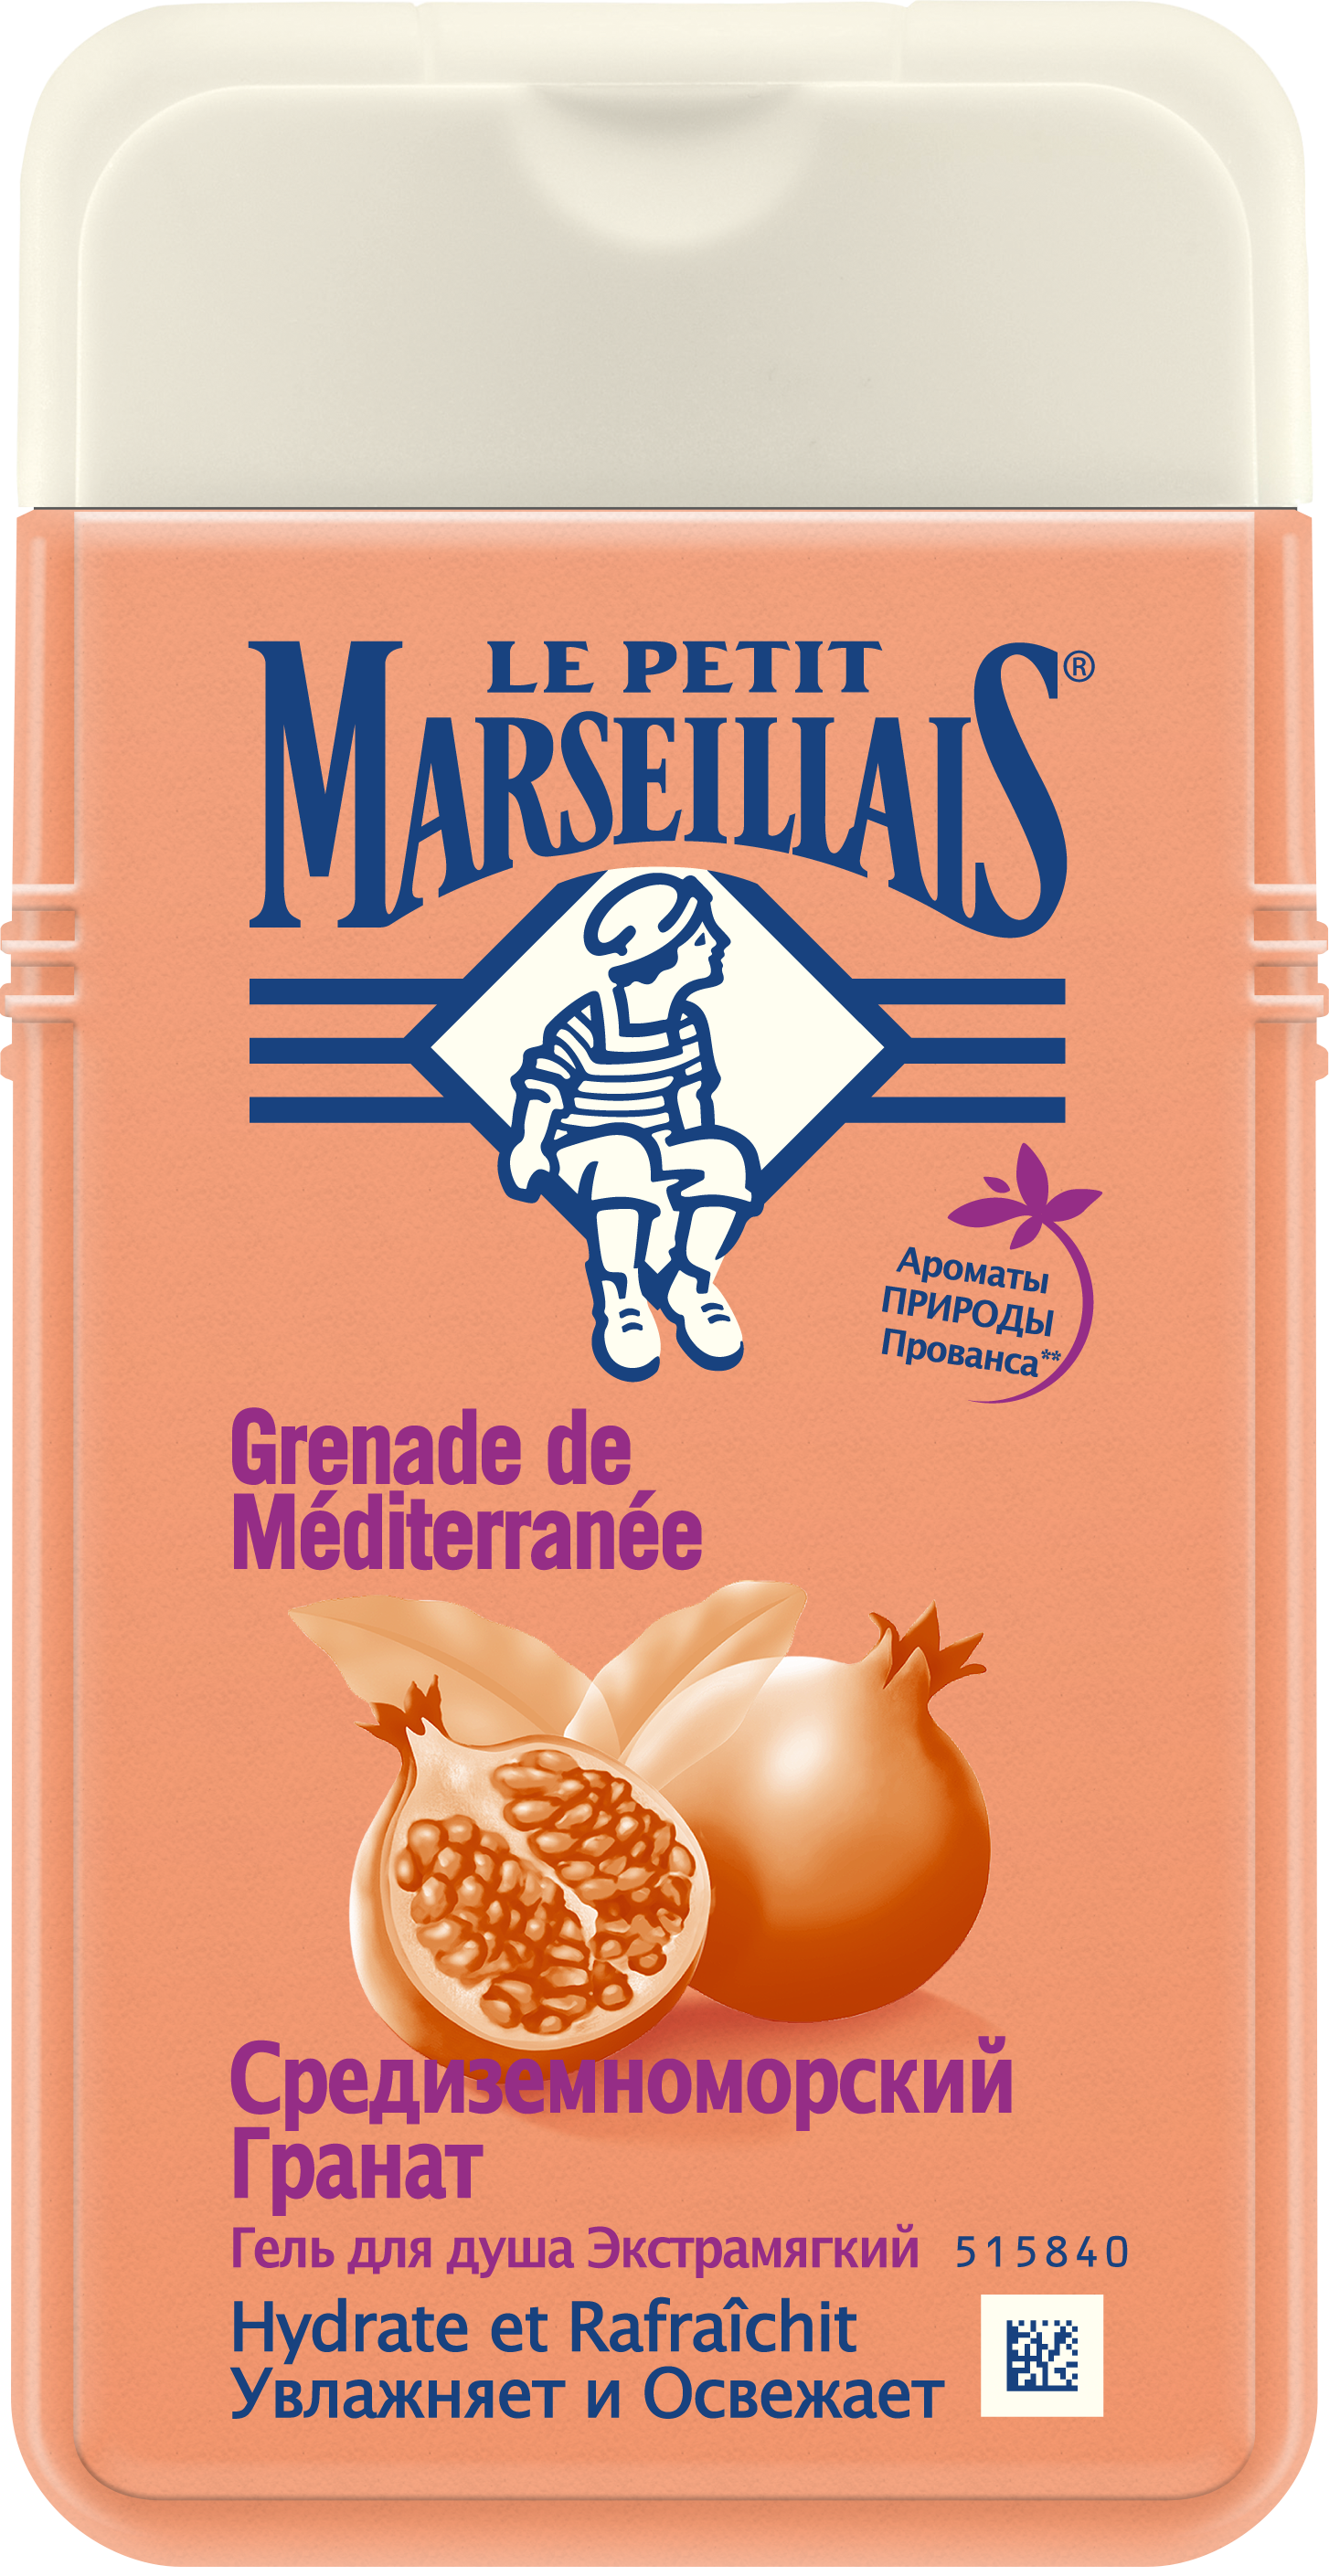 Гель для душа Le Petit Marseillais Средиземноморский гранат, 250 мл - фото 1